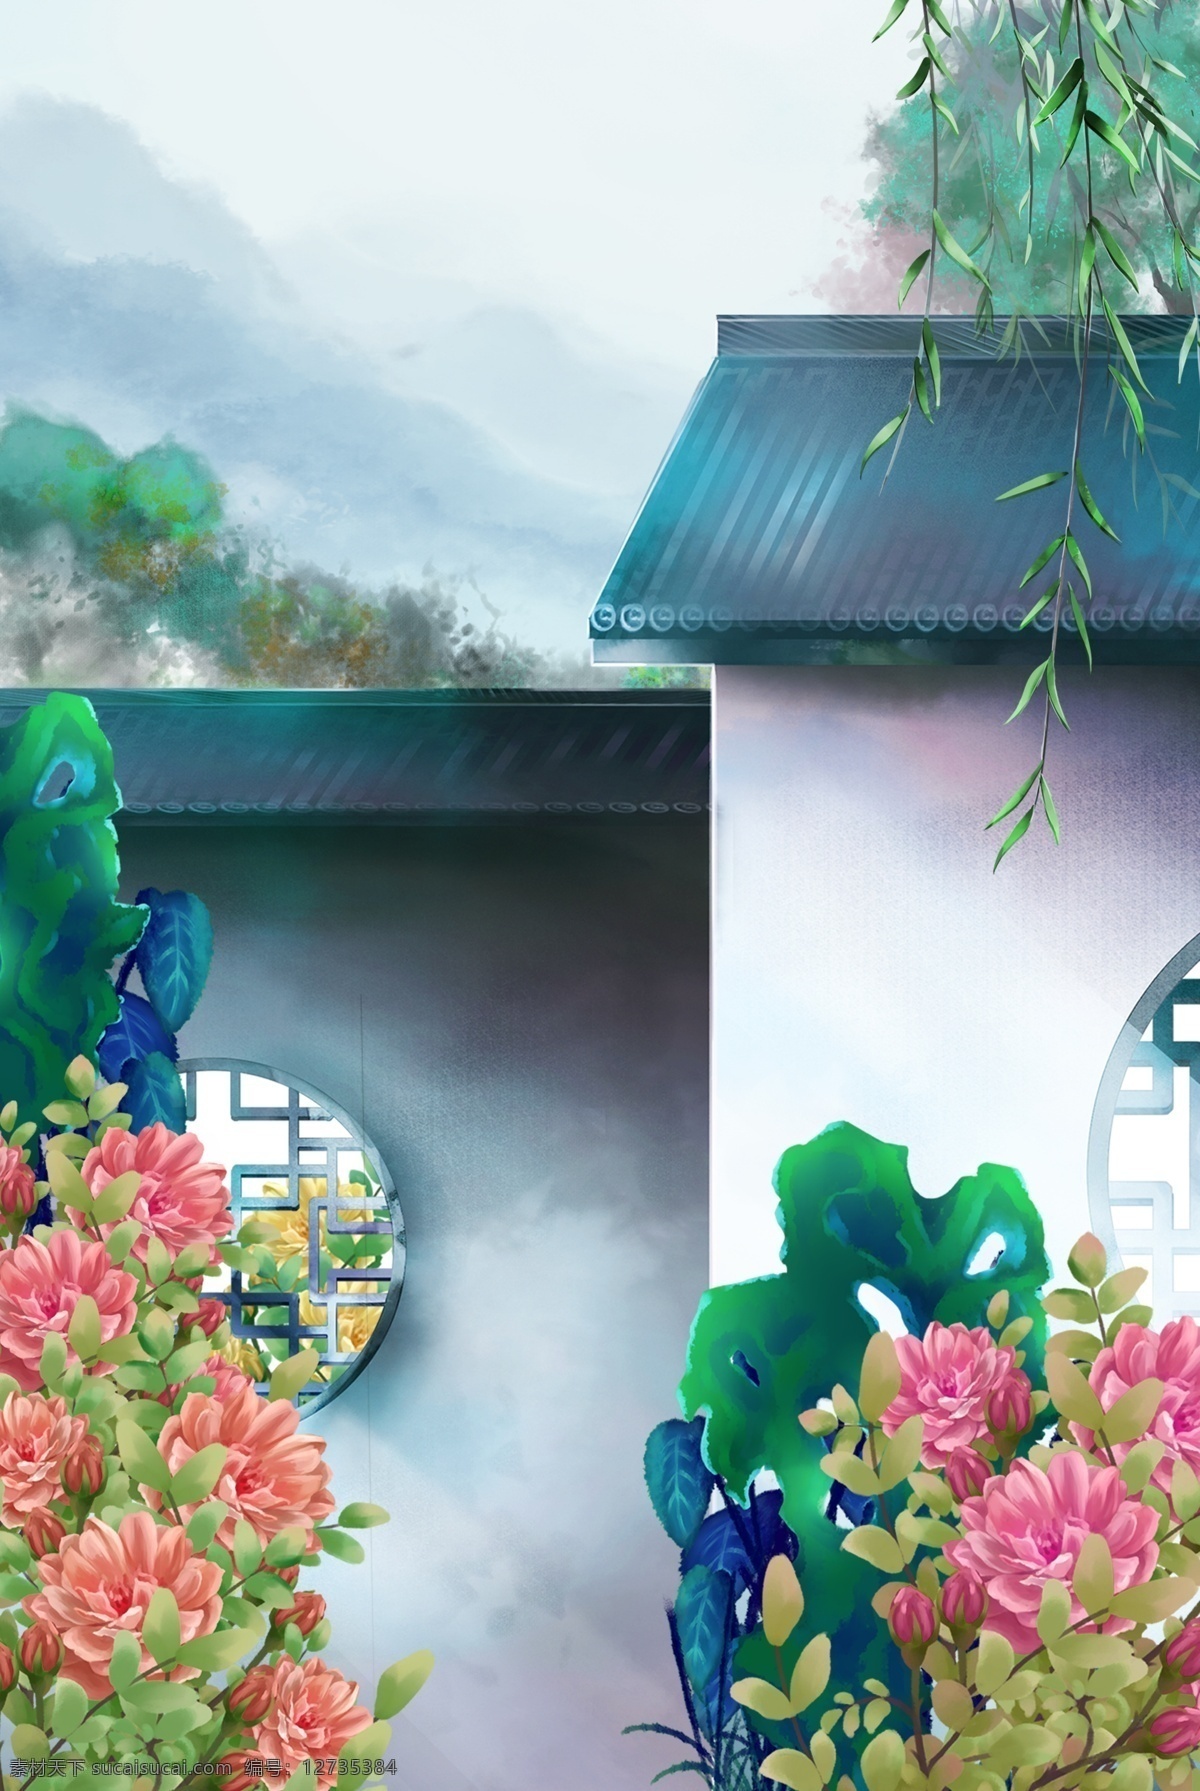 中国 风 彩色 风景画 中国风 大气 山水画 房屋 建筑物 植物 湖泊 精美 装饰画